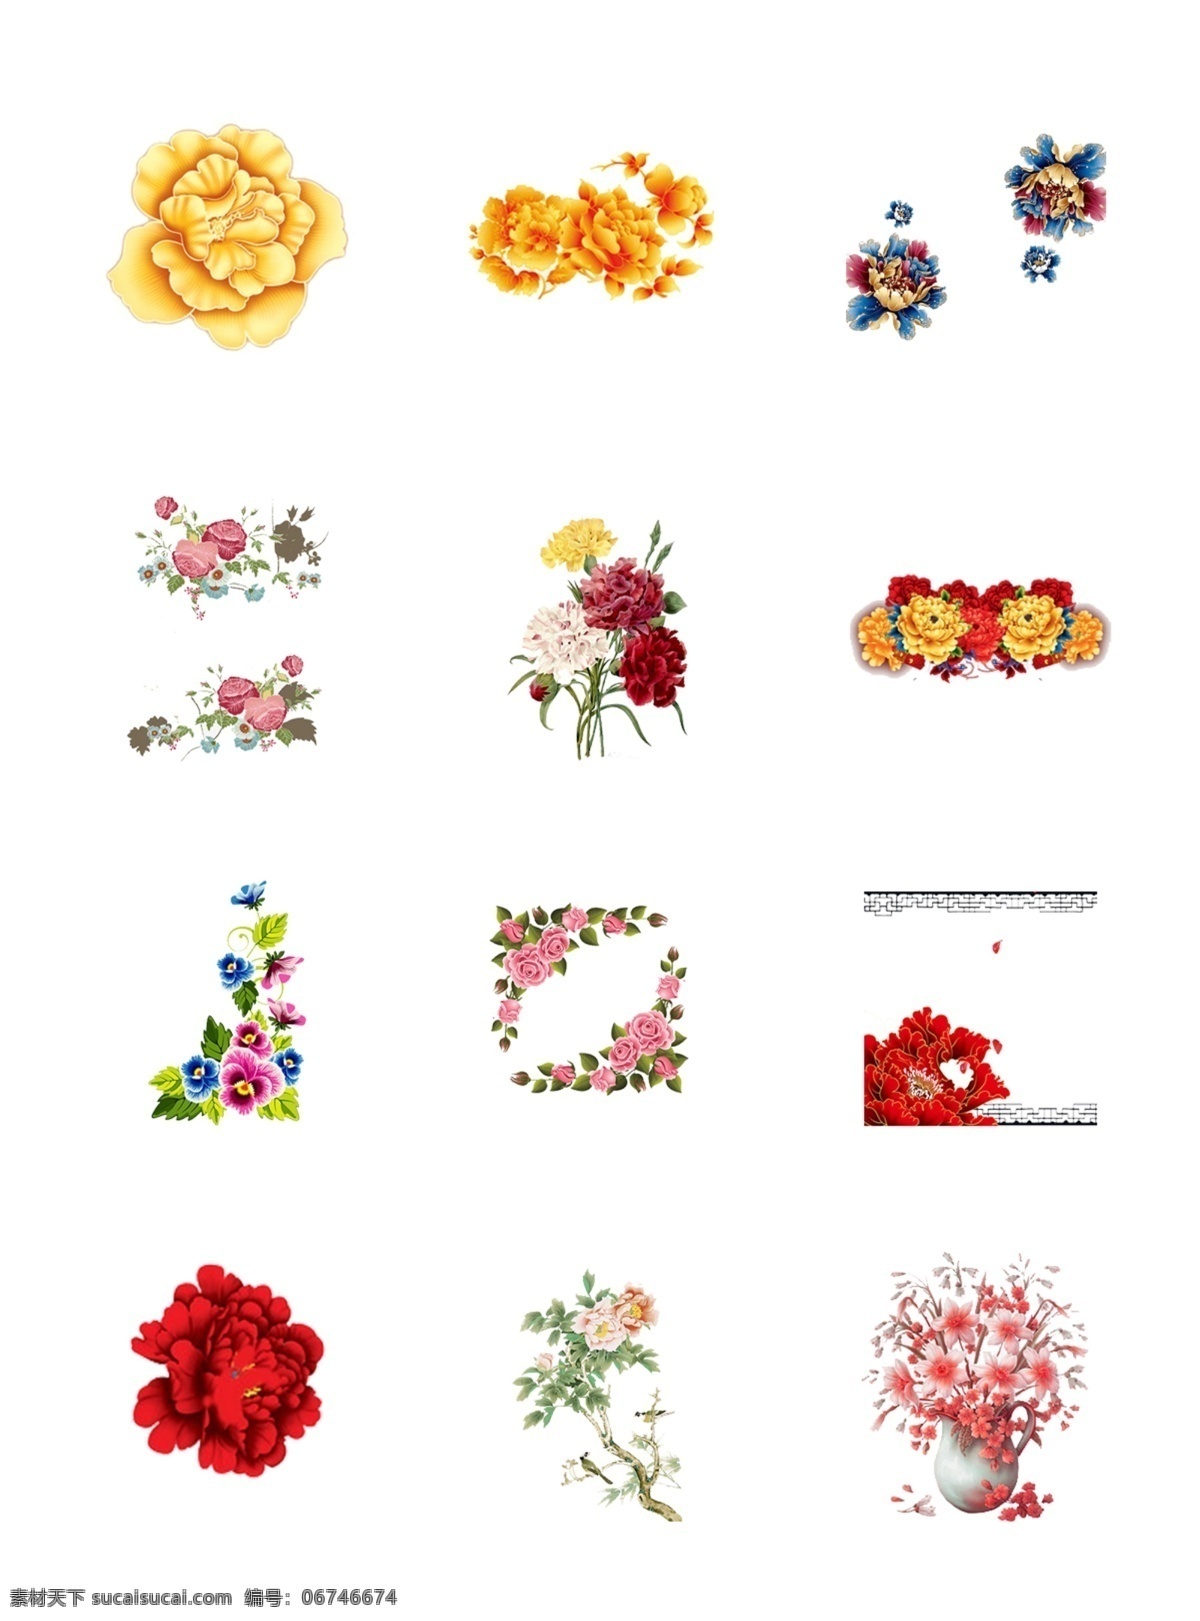 彩色 花开 富贵 透明 背景 设计元素 图案素材 创意图案 花开富贵 花朵素材 彩色元素 牡丹花开 花朵元素 精美图案 矢量元素 矢量图 抽象素材